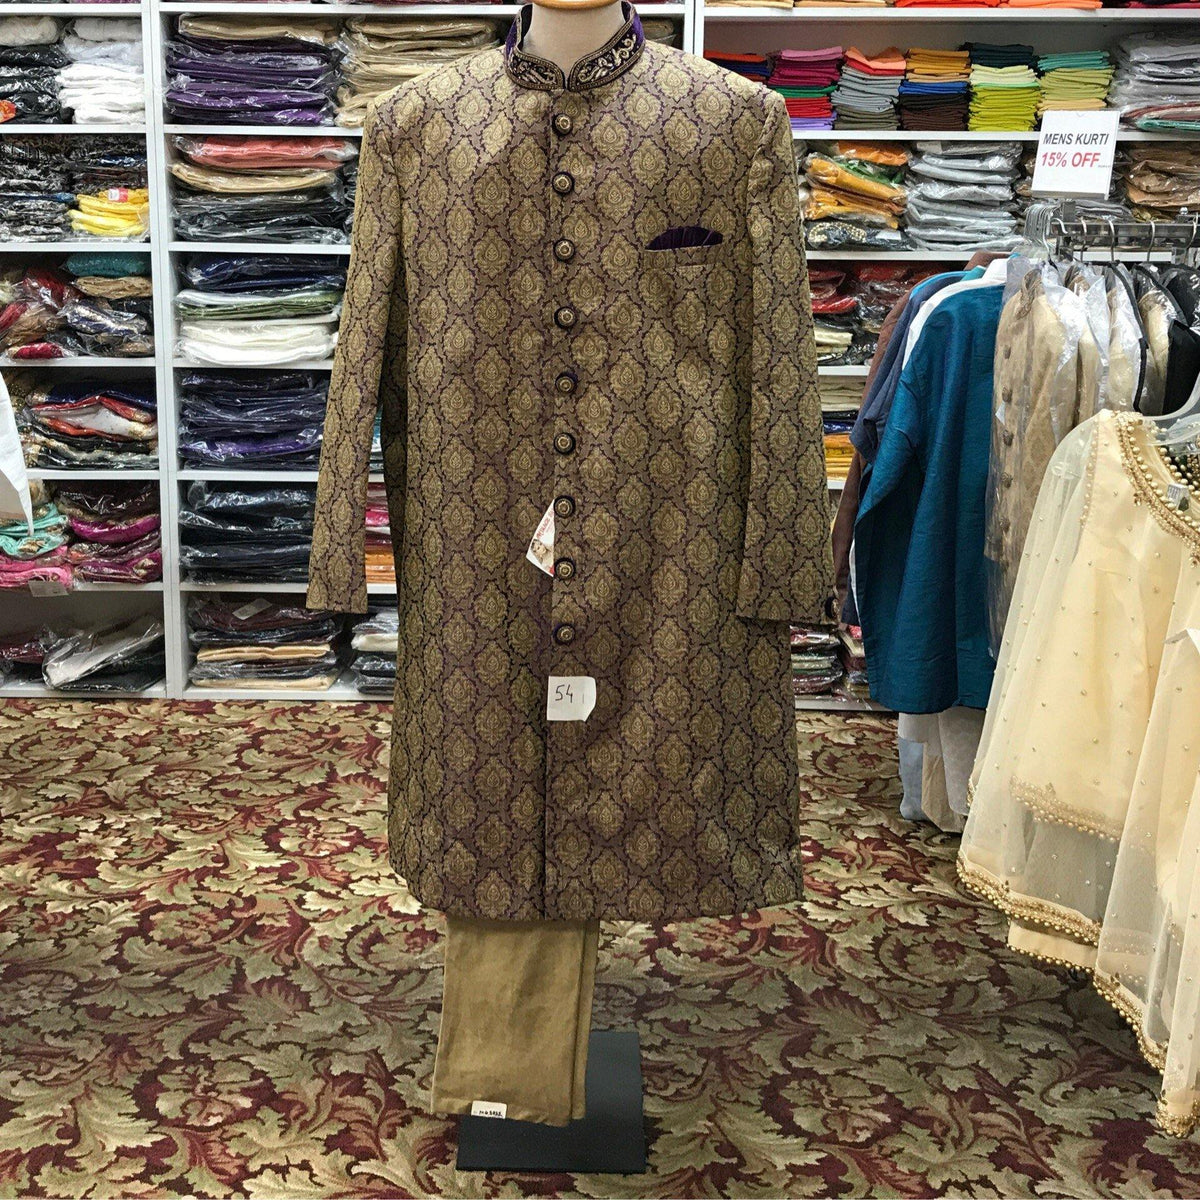 Sherwani pajama size 54 - Mirage Sari Center